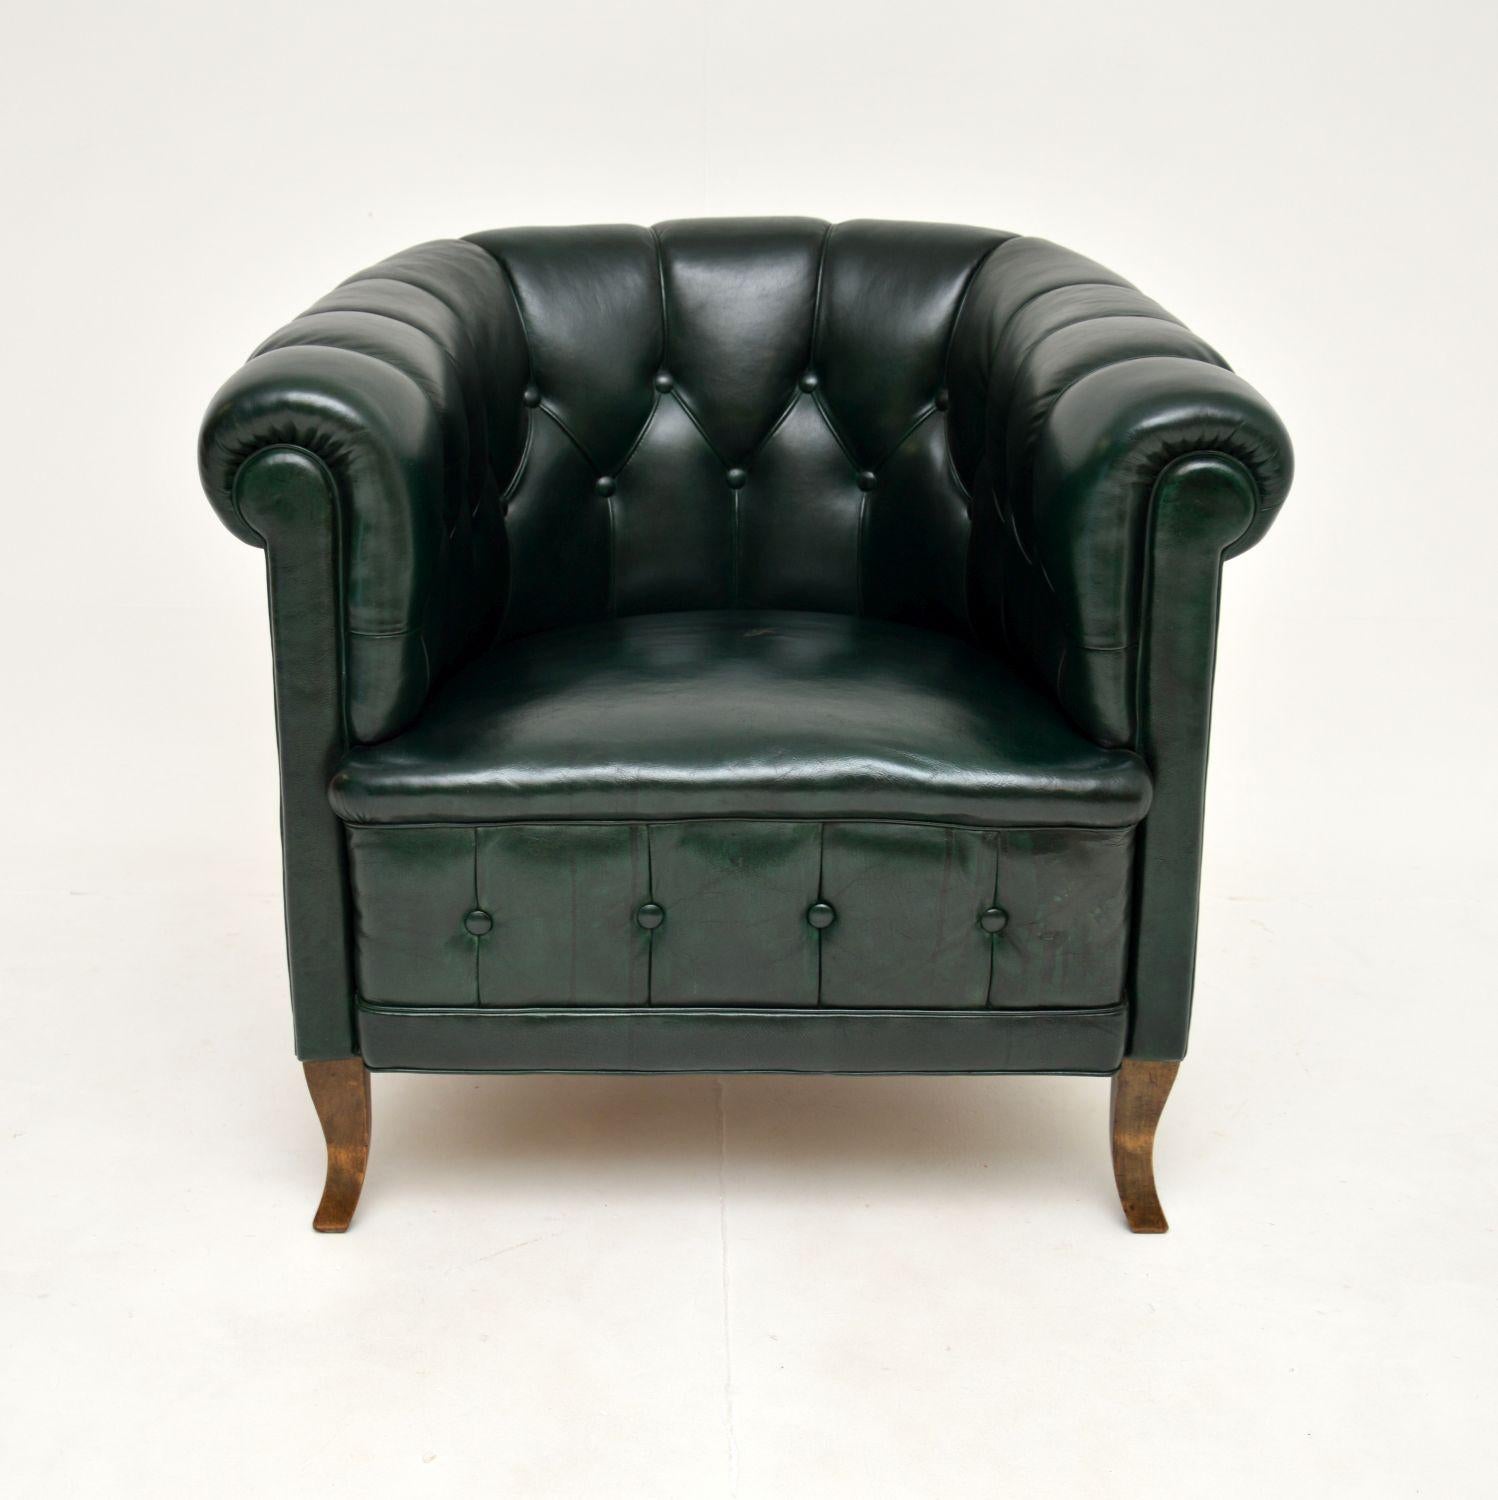 Un fantastique fauteuil club en cuir suédois ancien, récemment importé de Suède et datant d'environ 1900-1920.

Il est d'une superbe qualité, bien suspendu et très confortable. Le cuir vert est d'origine et a une couleur magnifique. Le dossier est